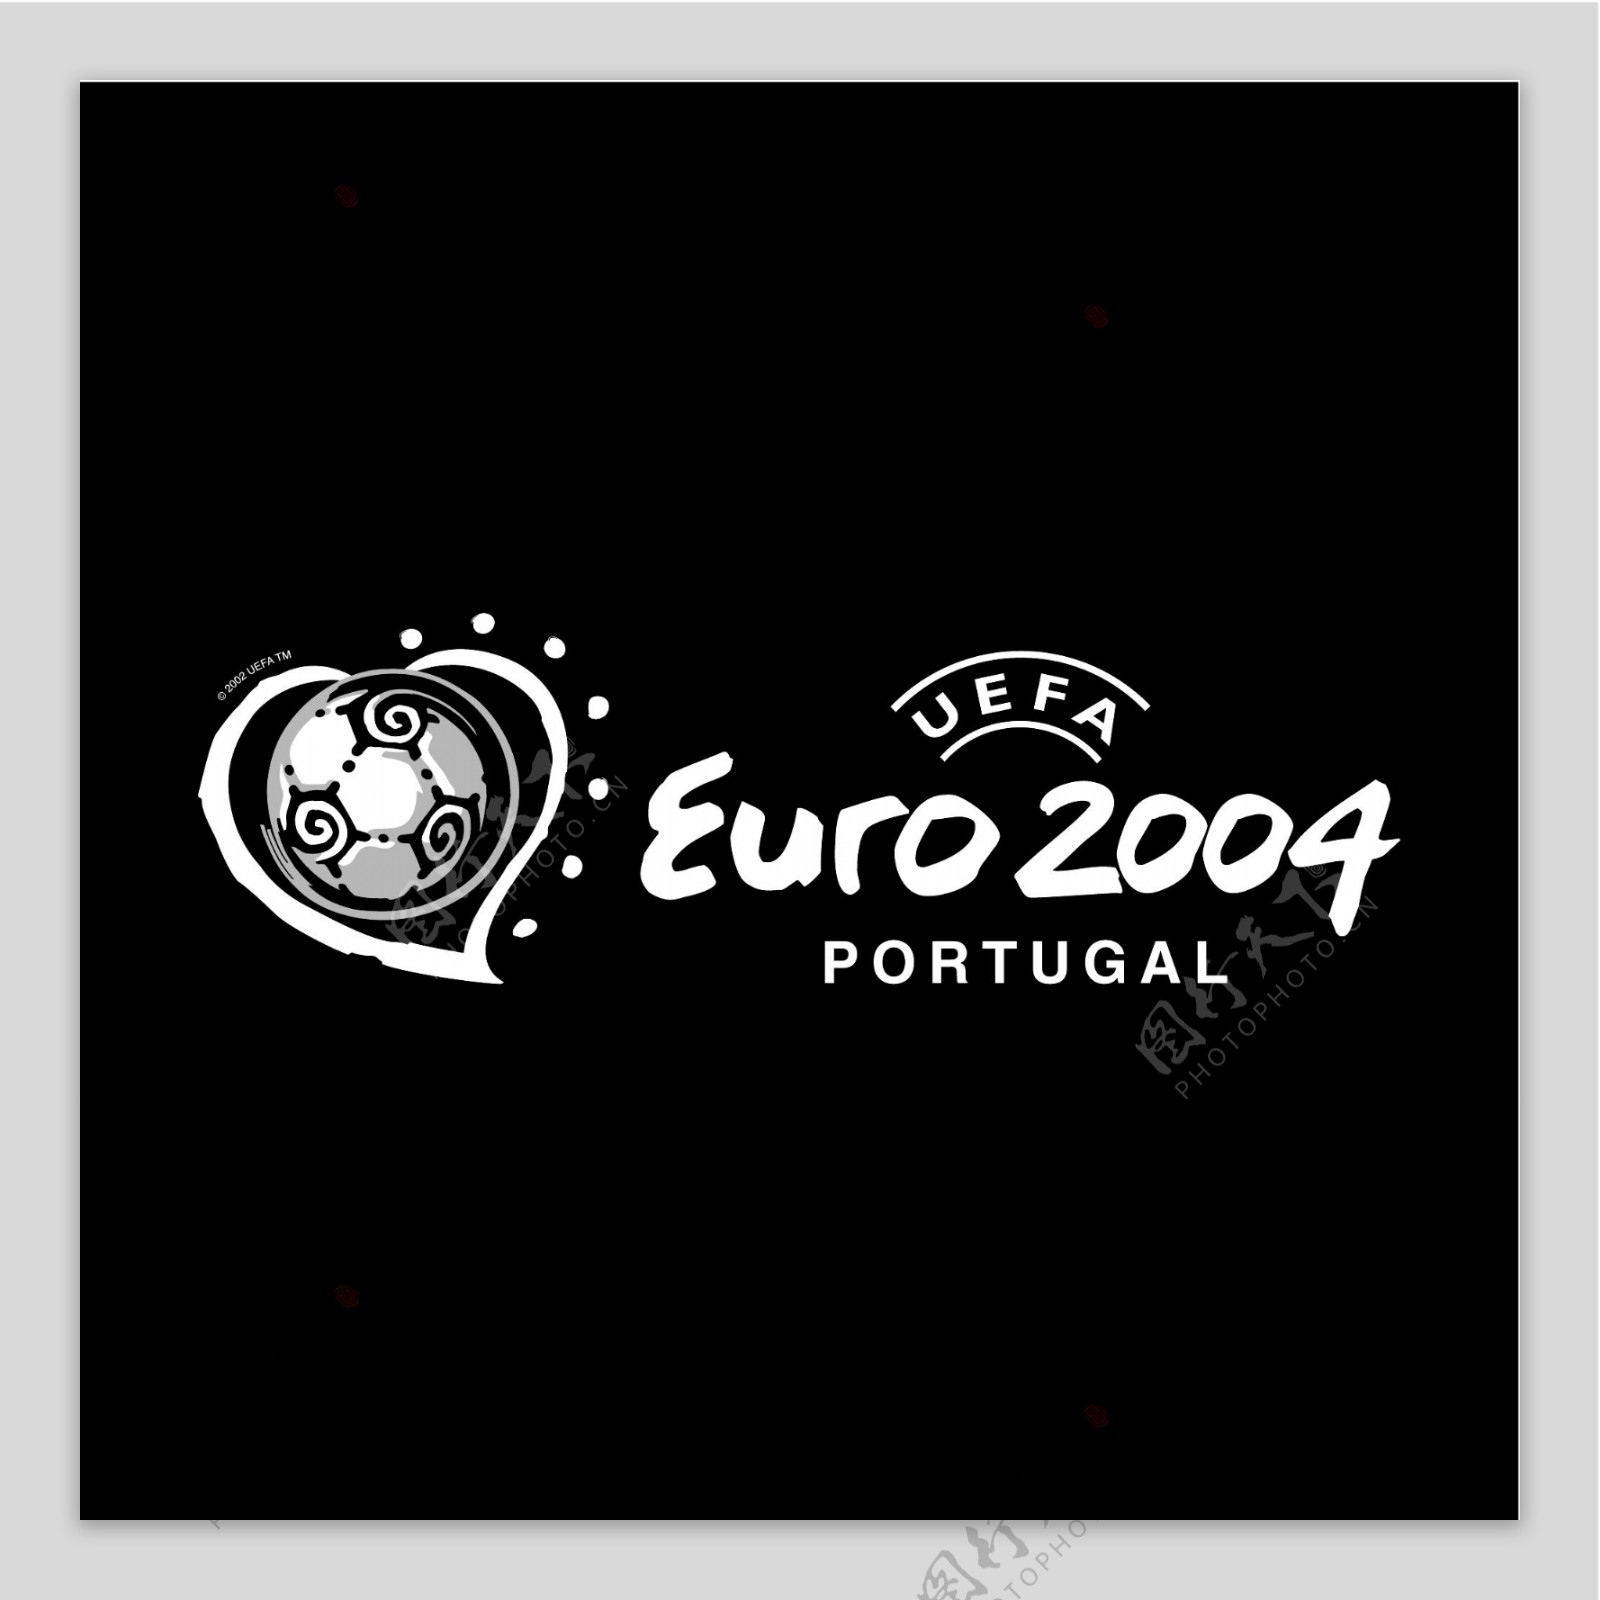 欧洲杯2004葡萄牙4